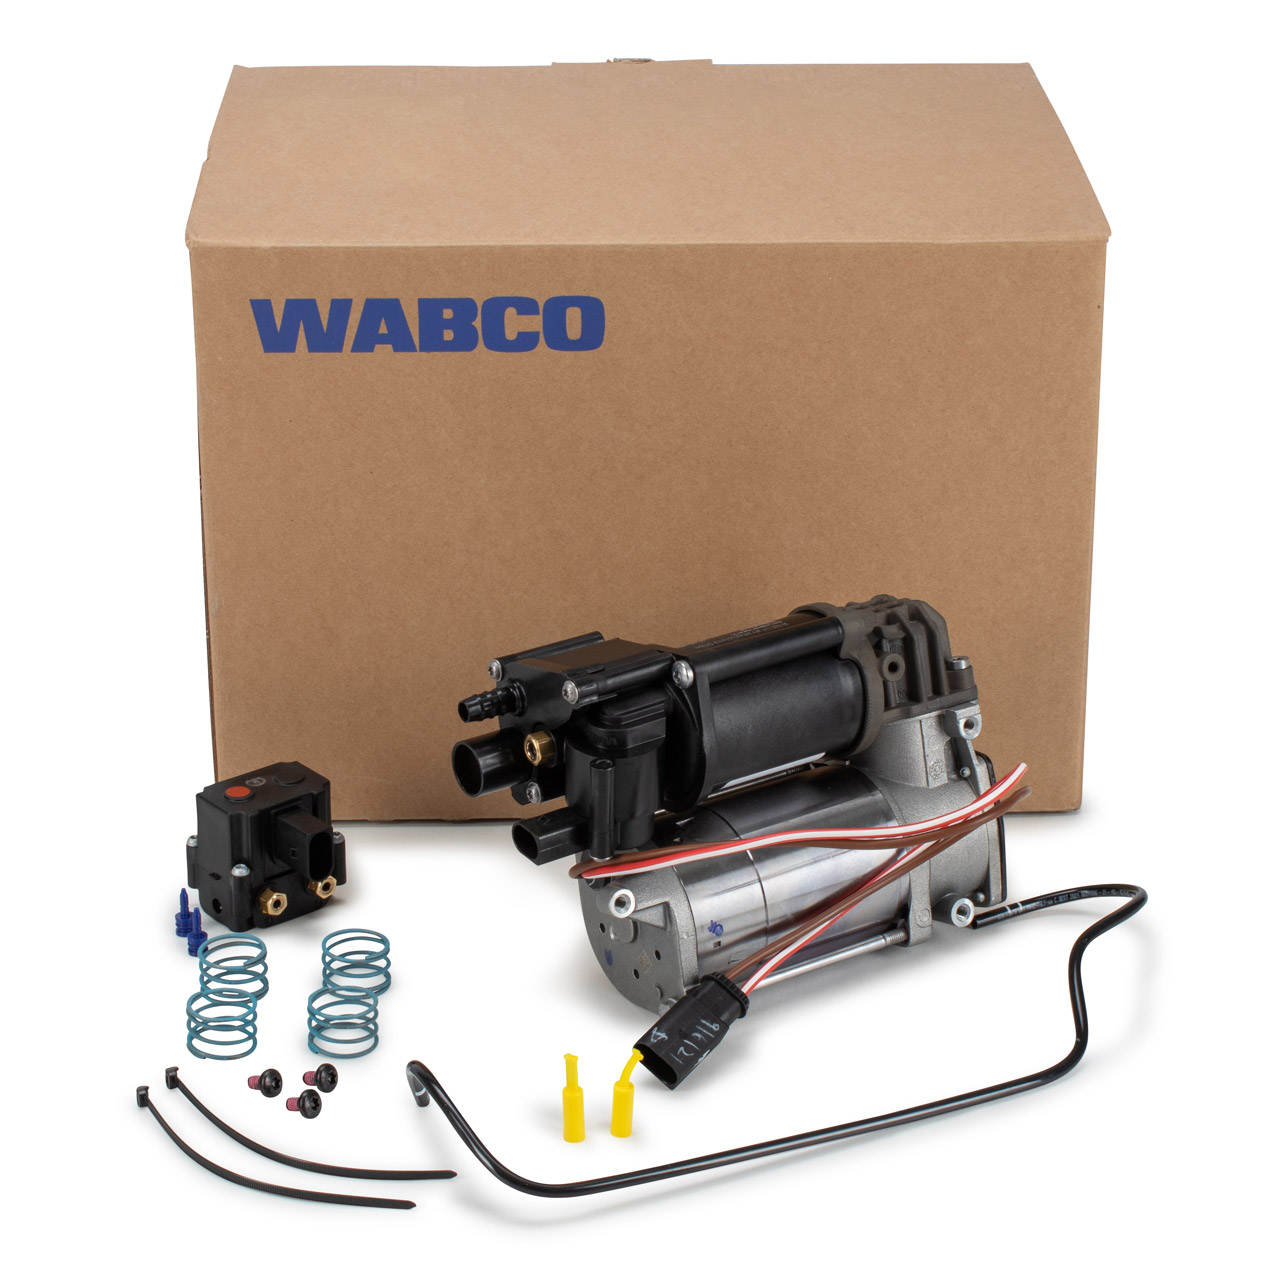 WABCO Kompressoren Luftfederung - 415 403 956 2 